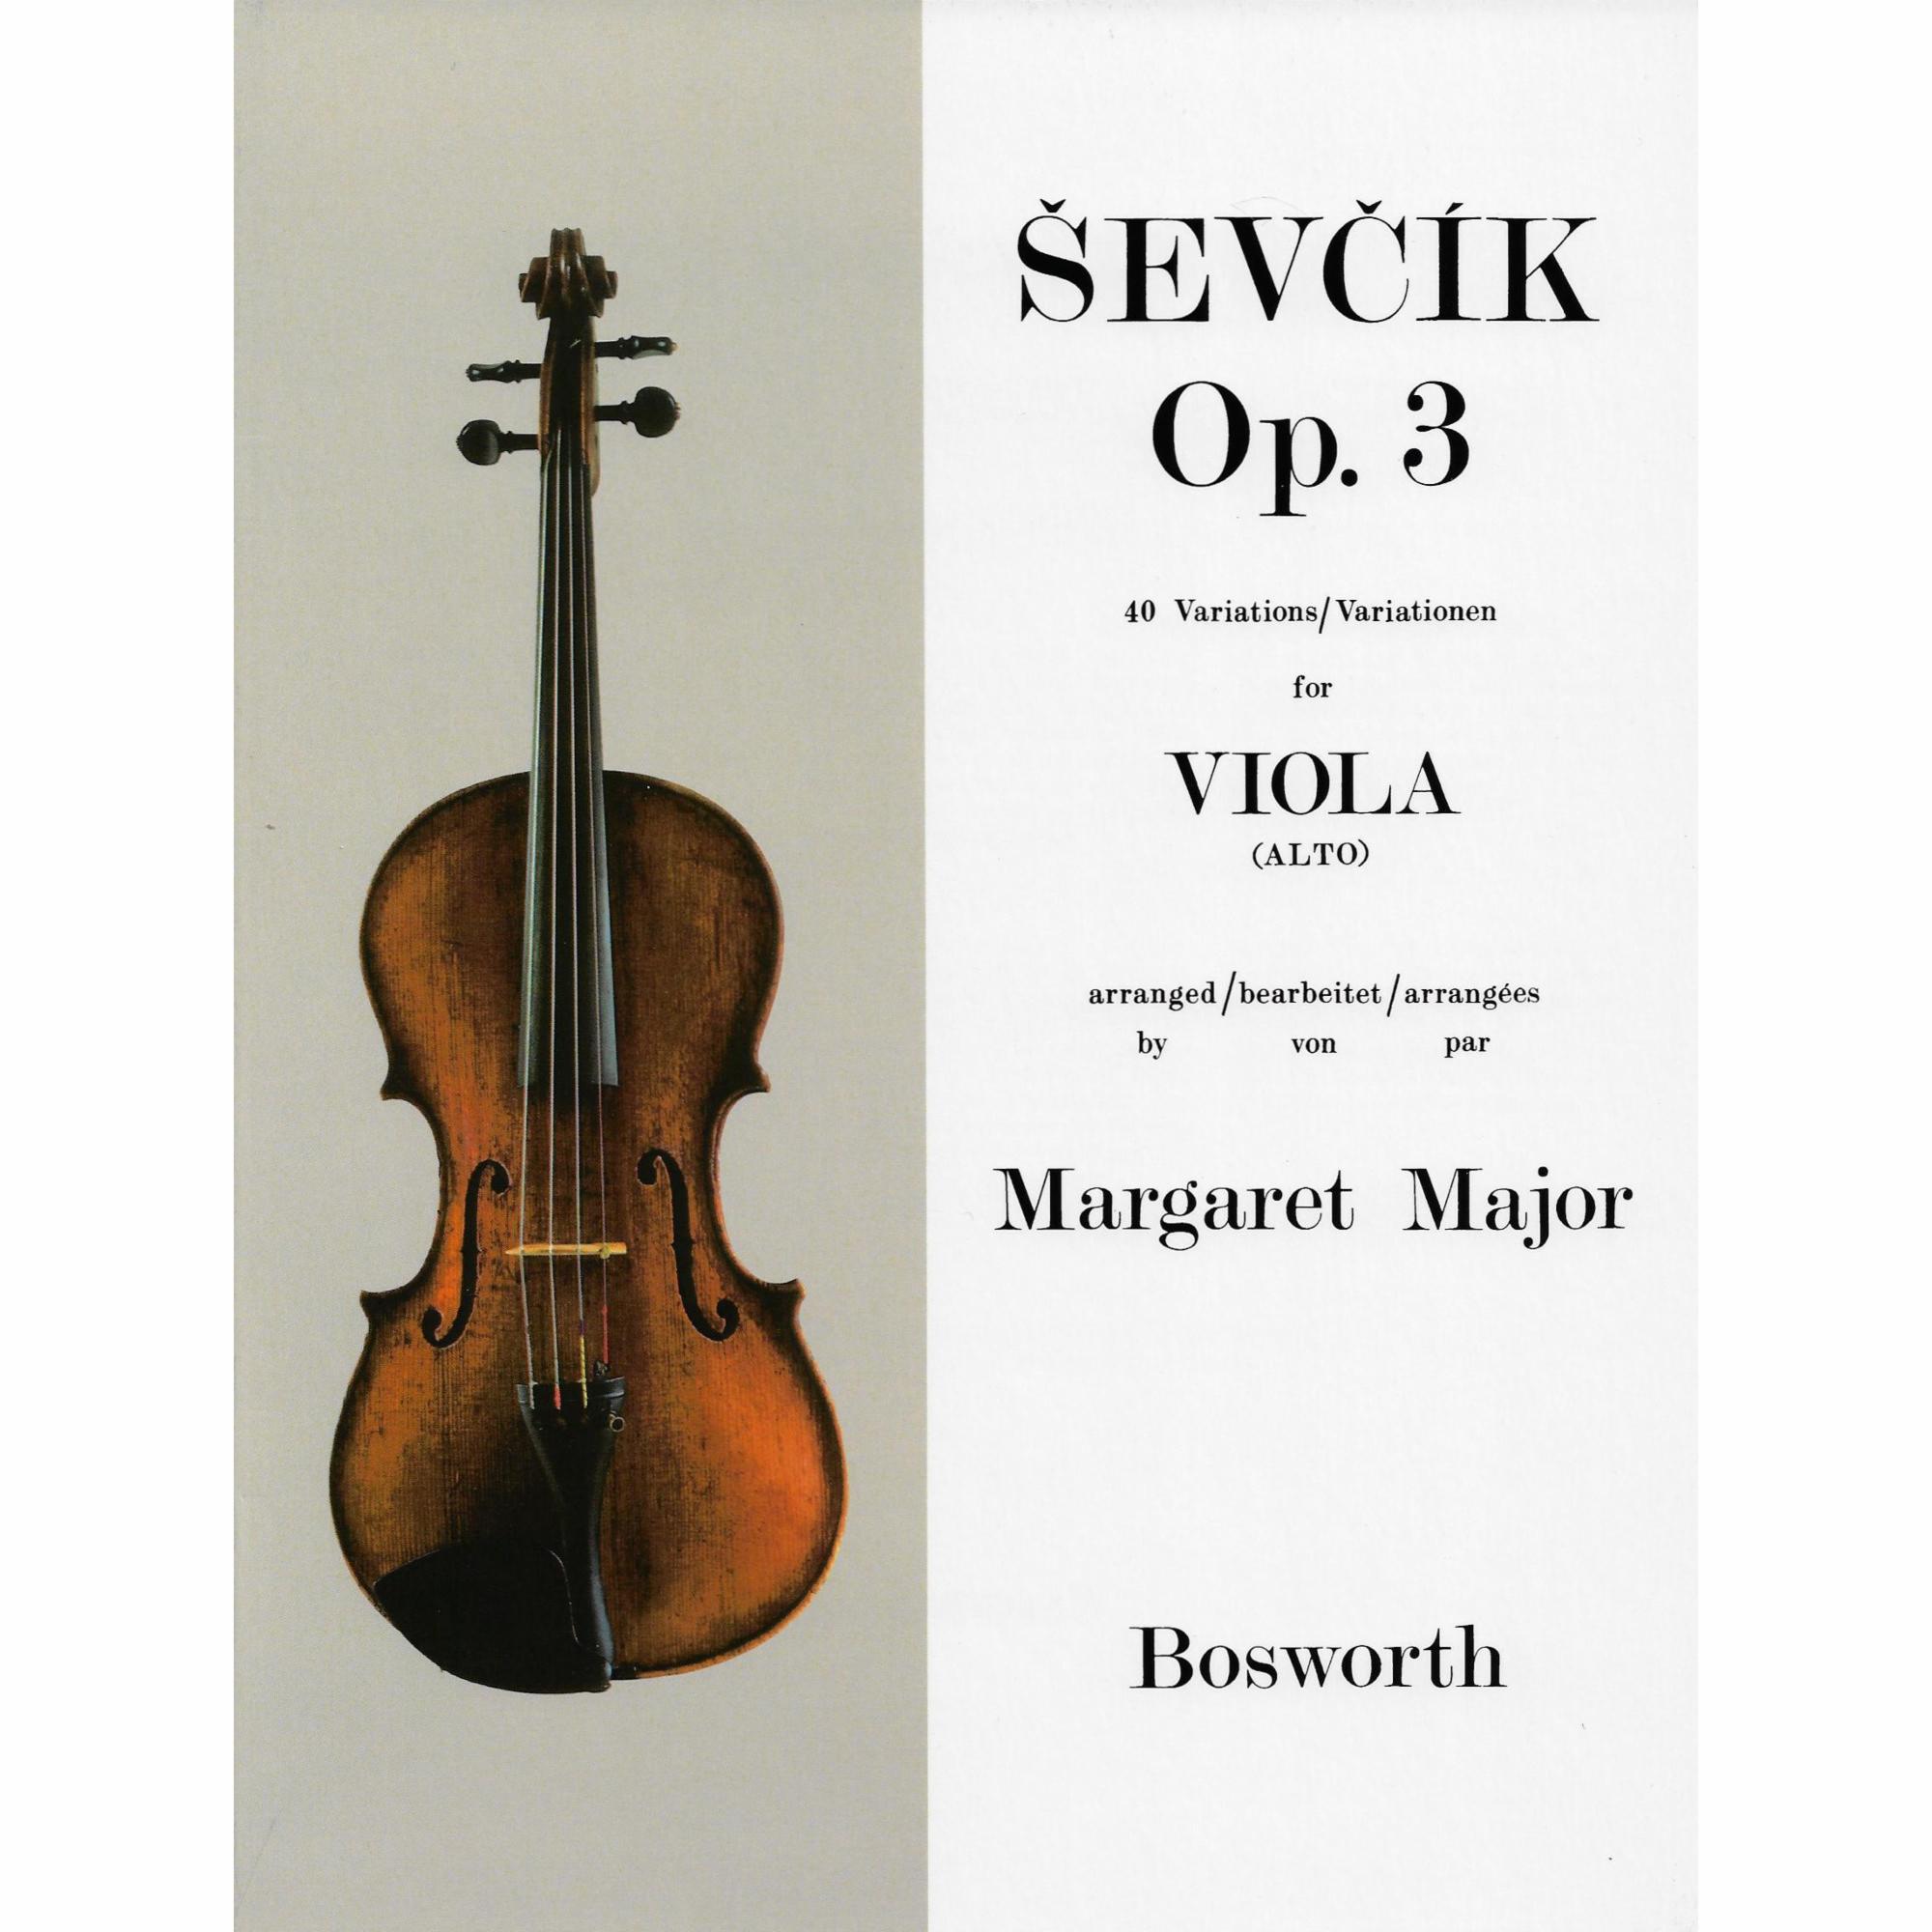 Sevcik -- 40 Variations, Op. 3 for Viola